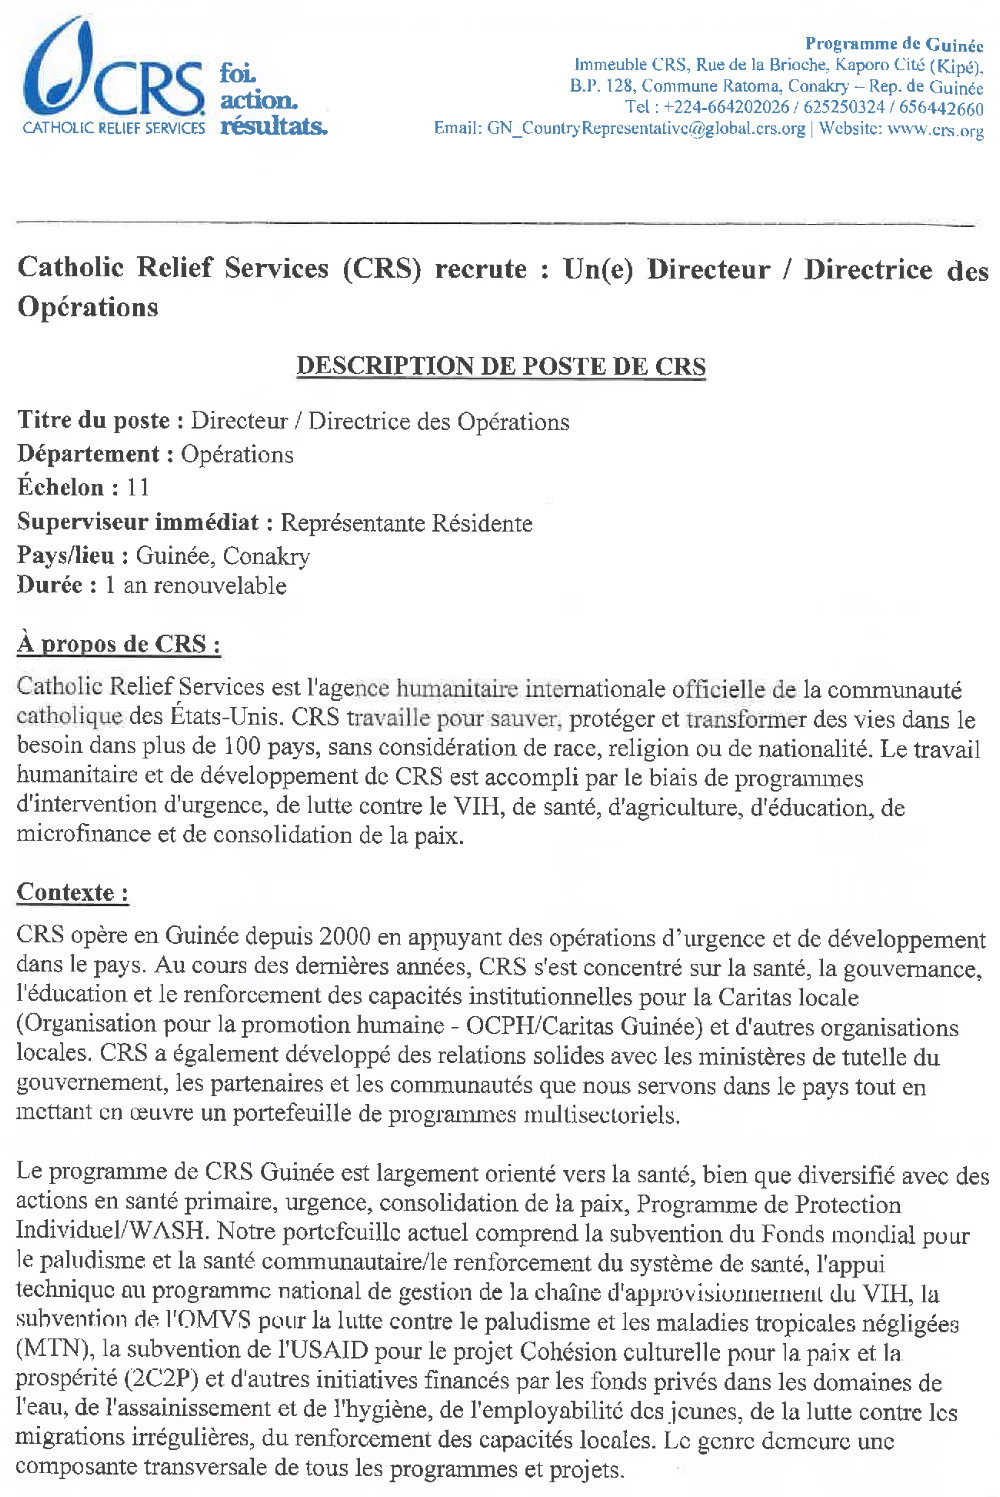 Appel à candidature pour le recrutement d’un(e) Directeur (trice) des Opérations pour CRS Guinée page 1 